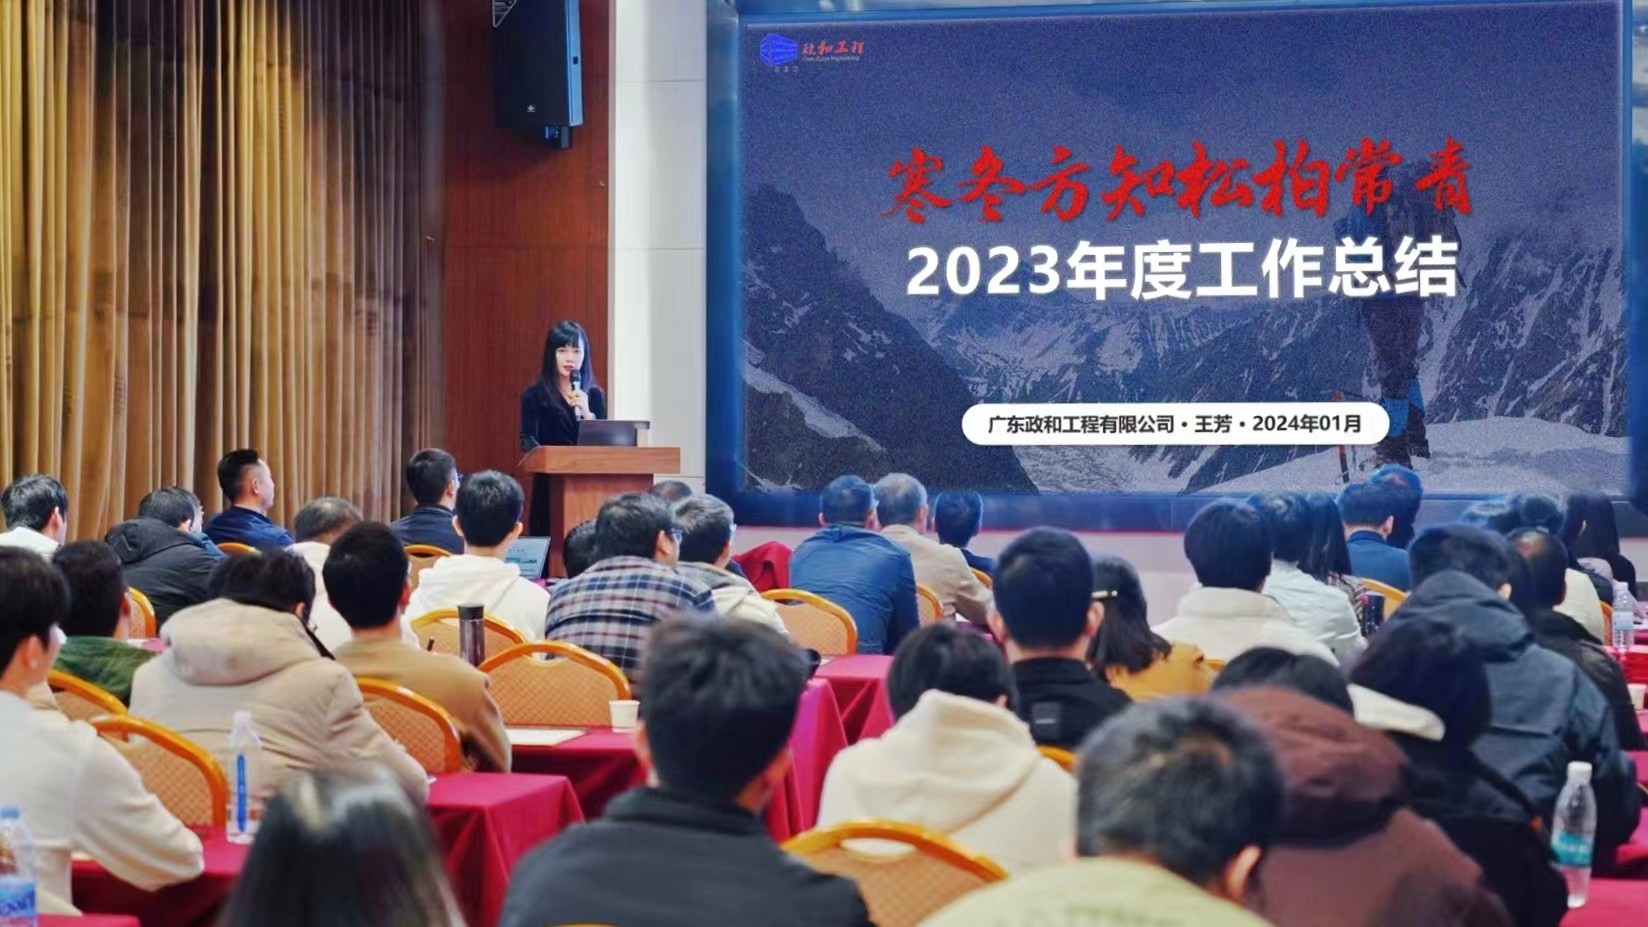 寒冬方知松柏長青---廣東政和工程有限公司2023年度總結表彰會暨團建活動